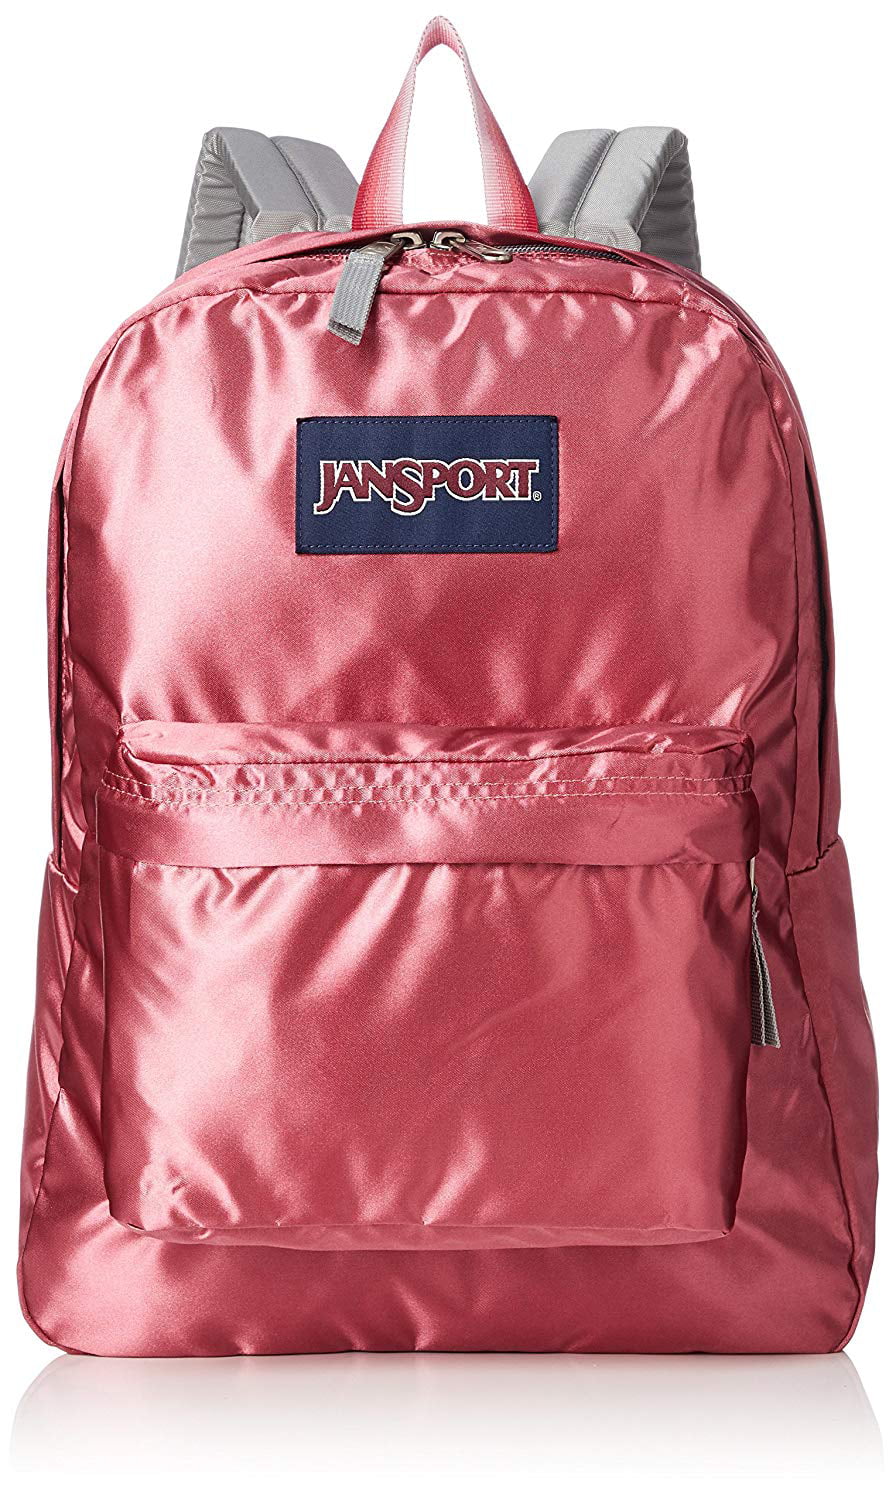 jansport satin backpack